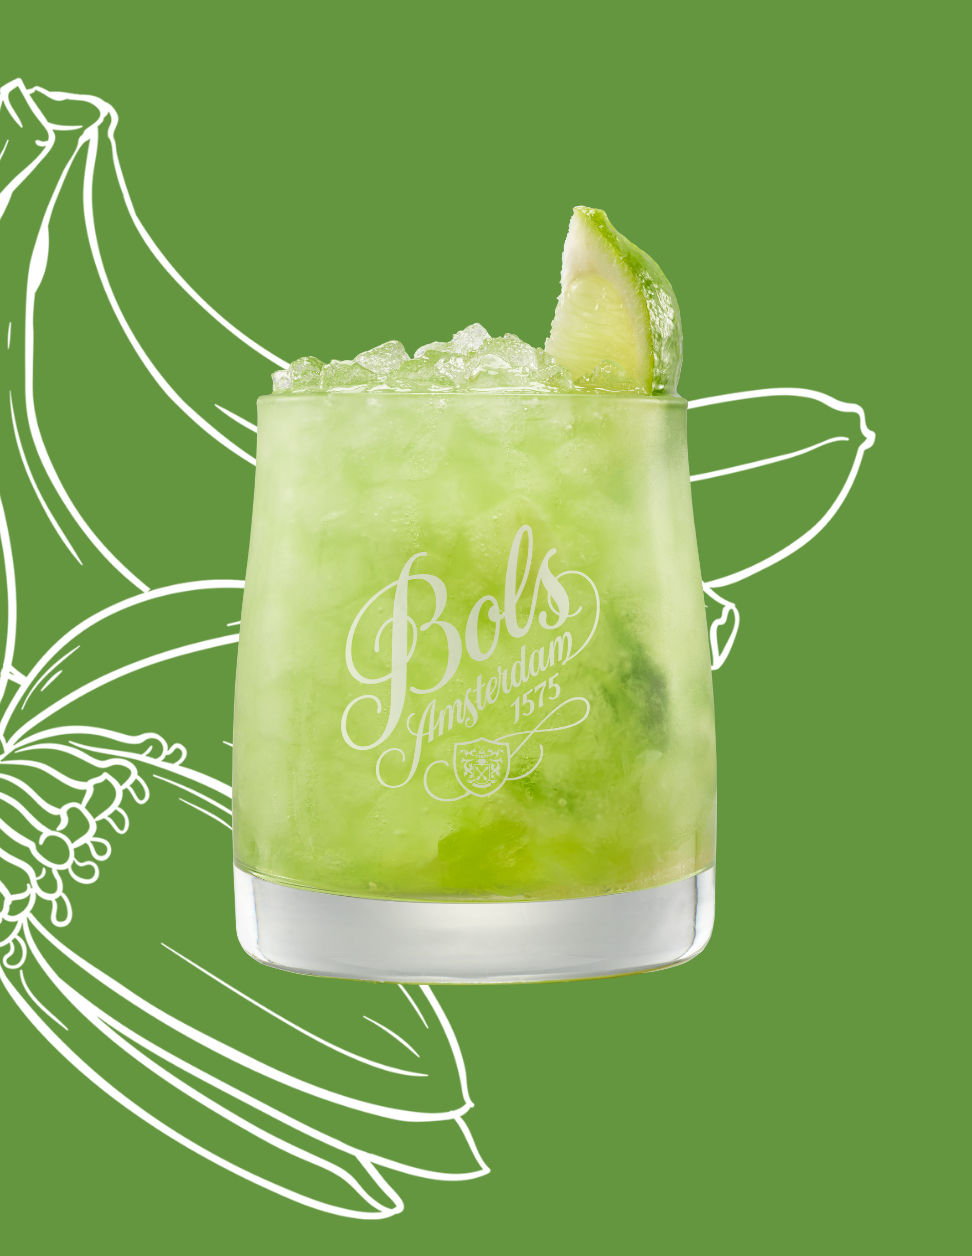 Green Caipiroshka Cocktail Recipe with Bols Green Banana and Vodka Products